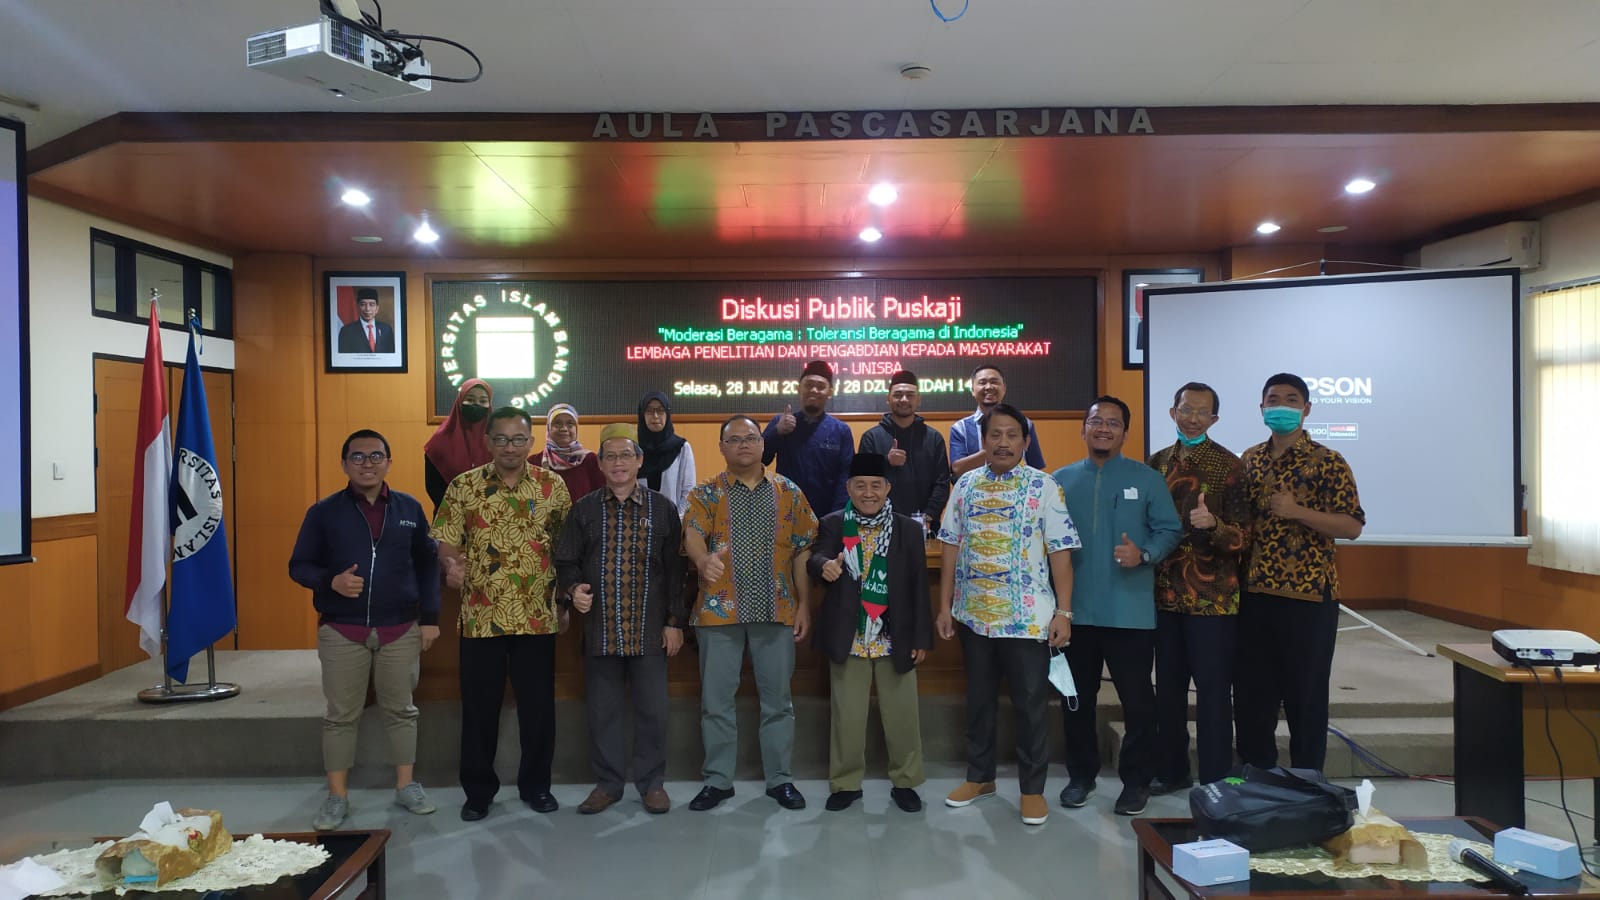 Moderasi Beragama: Toleransi Beragama di Indonesia